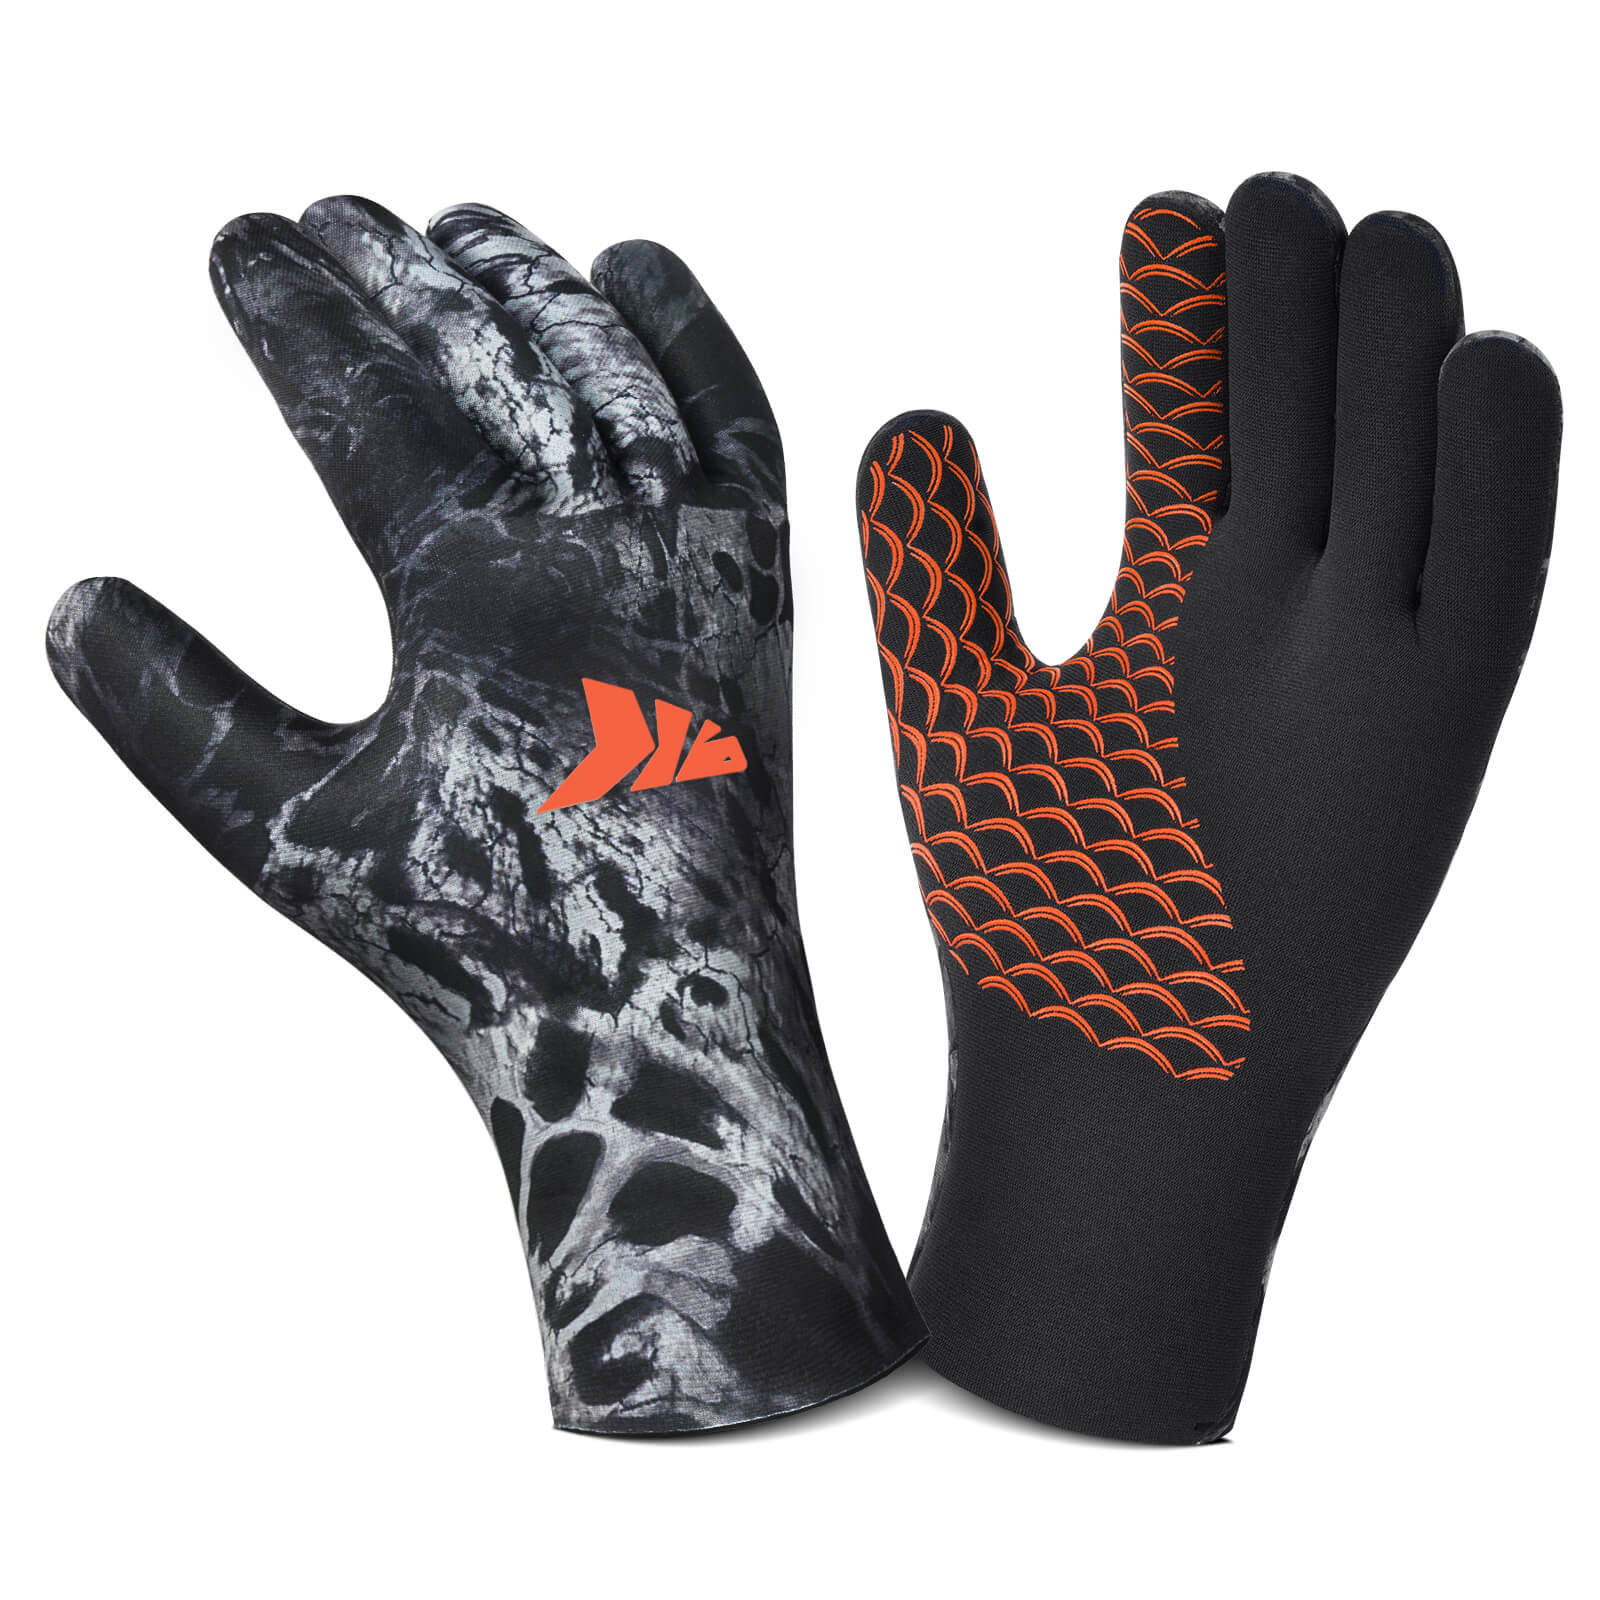 KastKing IceRiver Fishing Gloves - Prym1 Blackout / XX-Large